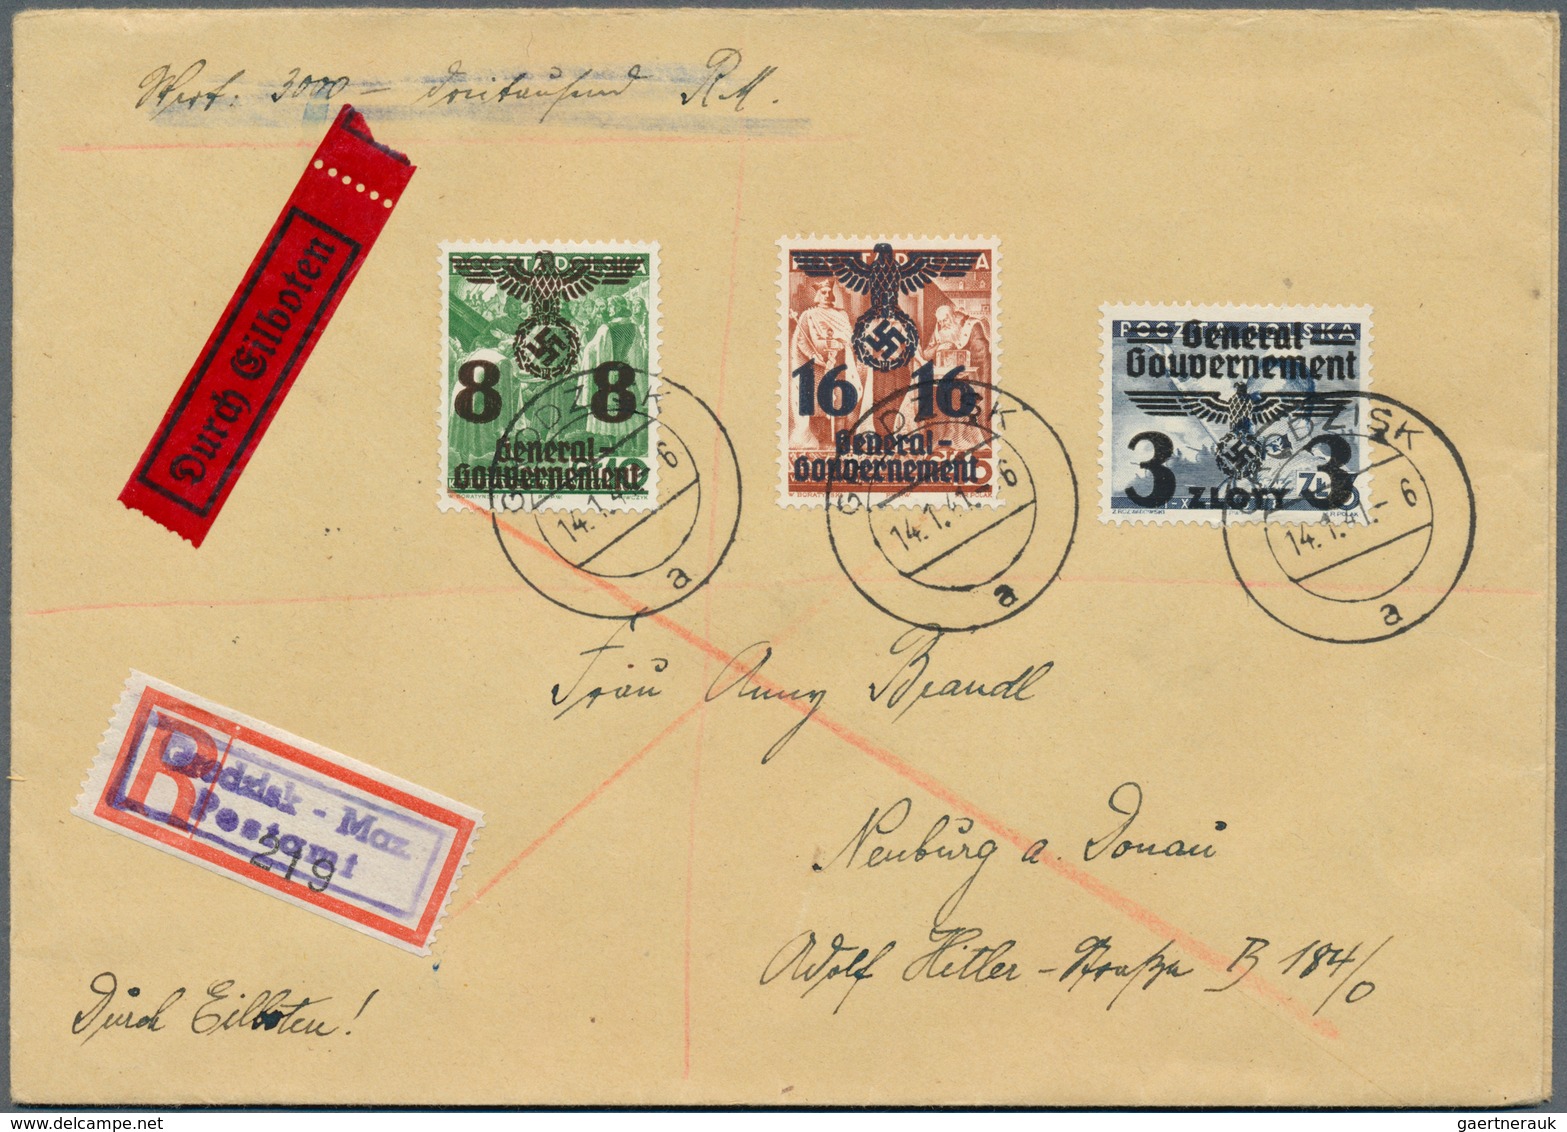 19415 Dt. Besetzung II WK - Generalgouvernement: 1941, alle 26 Aufdruckwerte komplett auf sechs Briefen, d